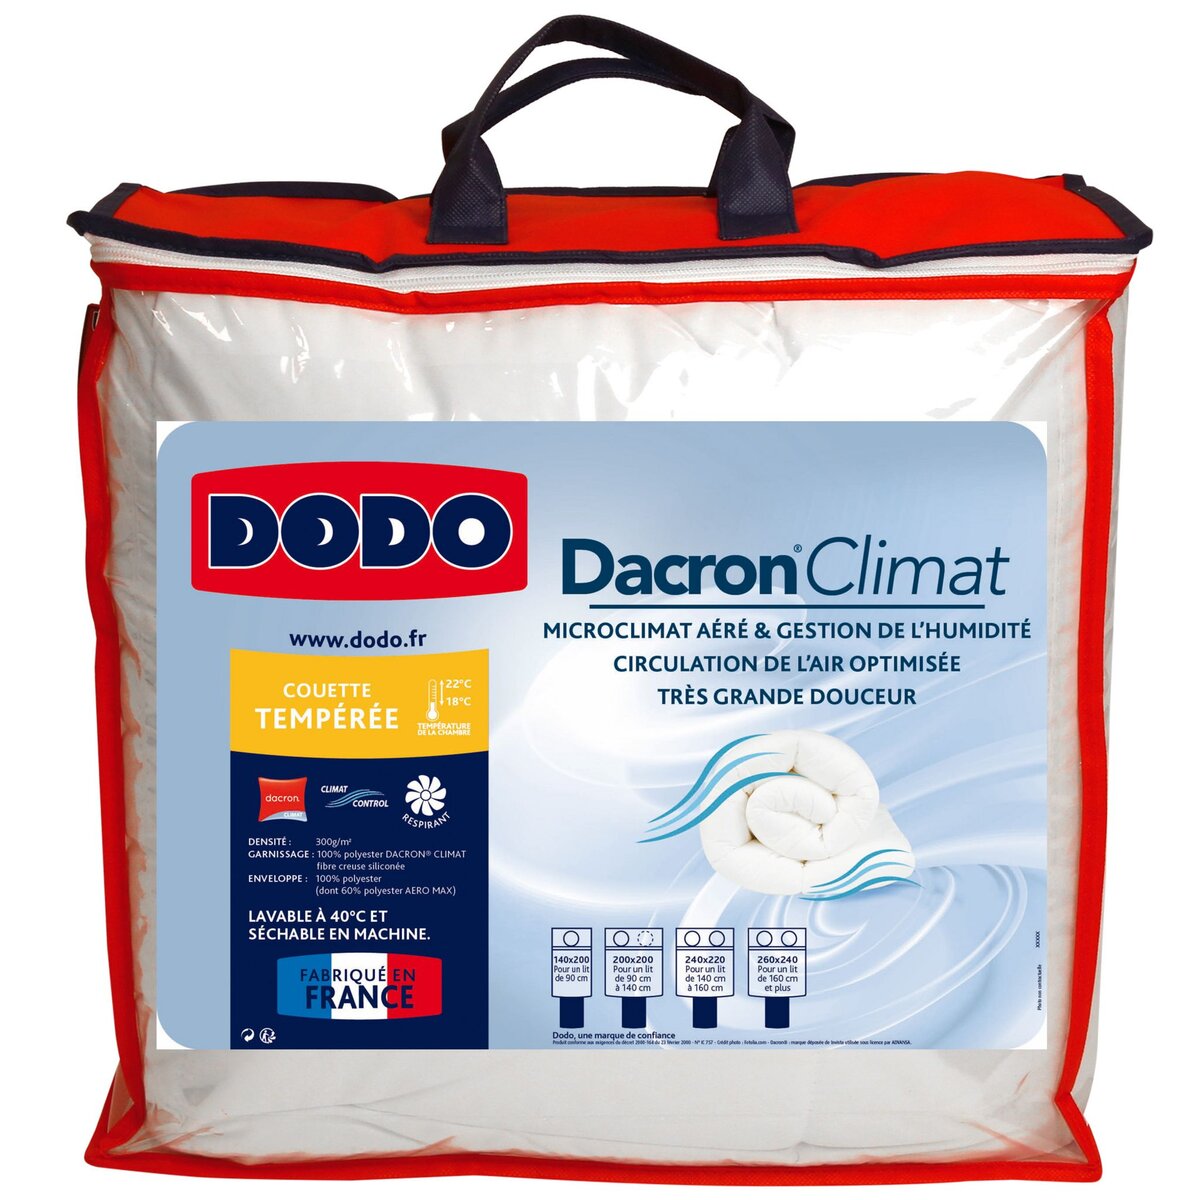 DODO Couette tempérée polyester DACRON CLIMAT CONTROL